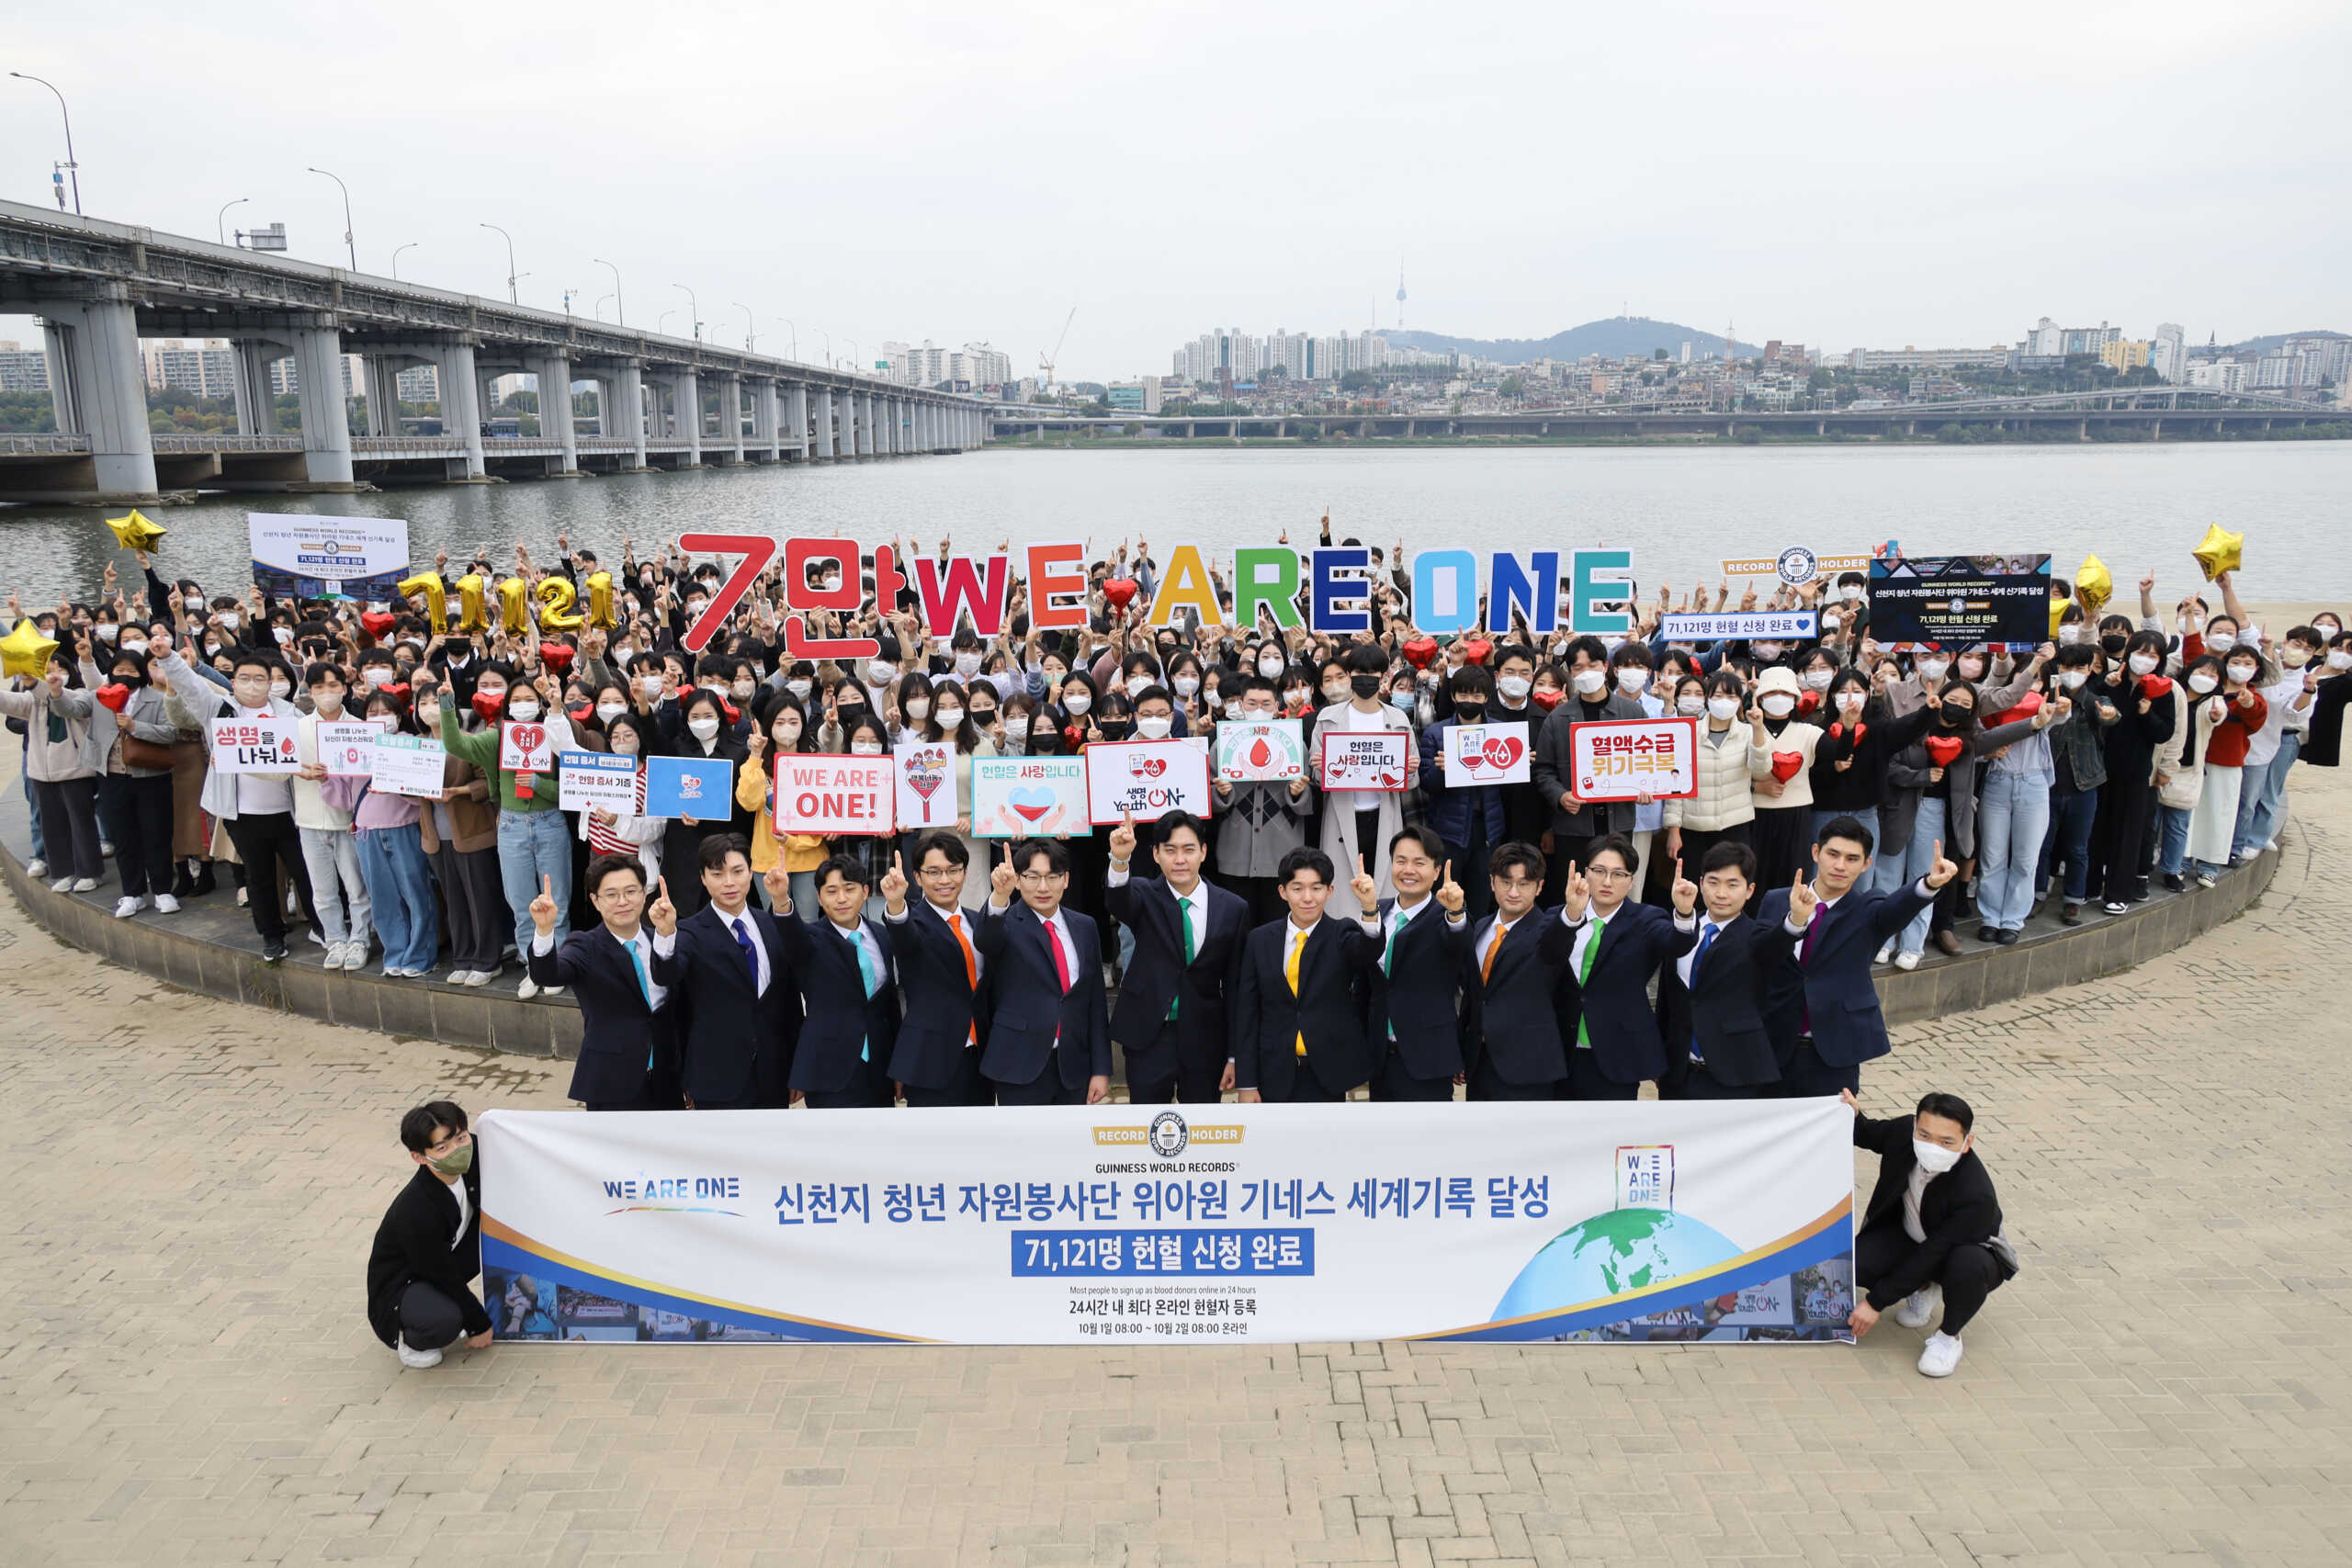 Neuer GUINNESS WORLD RECORDS™ Titel für die meisten registrierten Blutspender mit über 70.000 Spendern in Südkorea